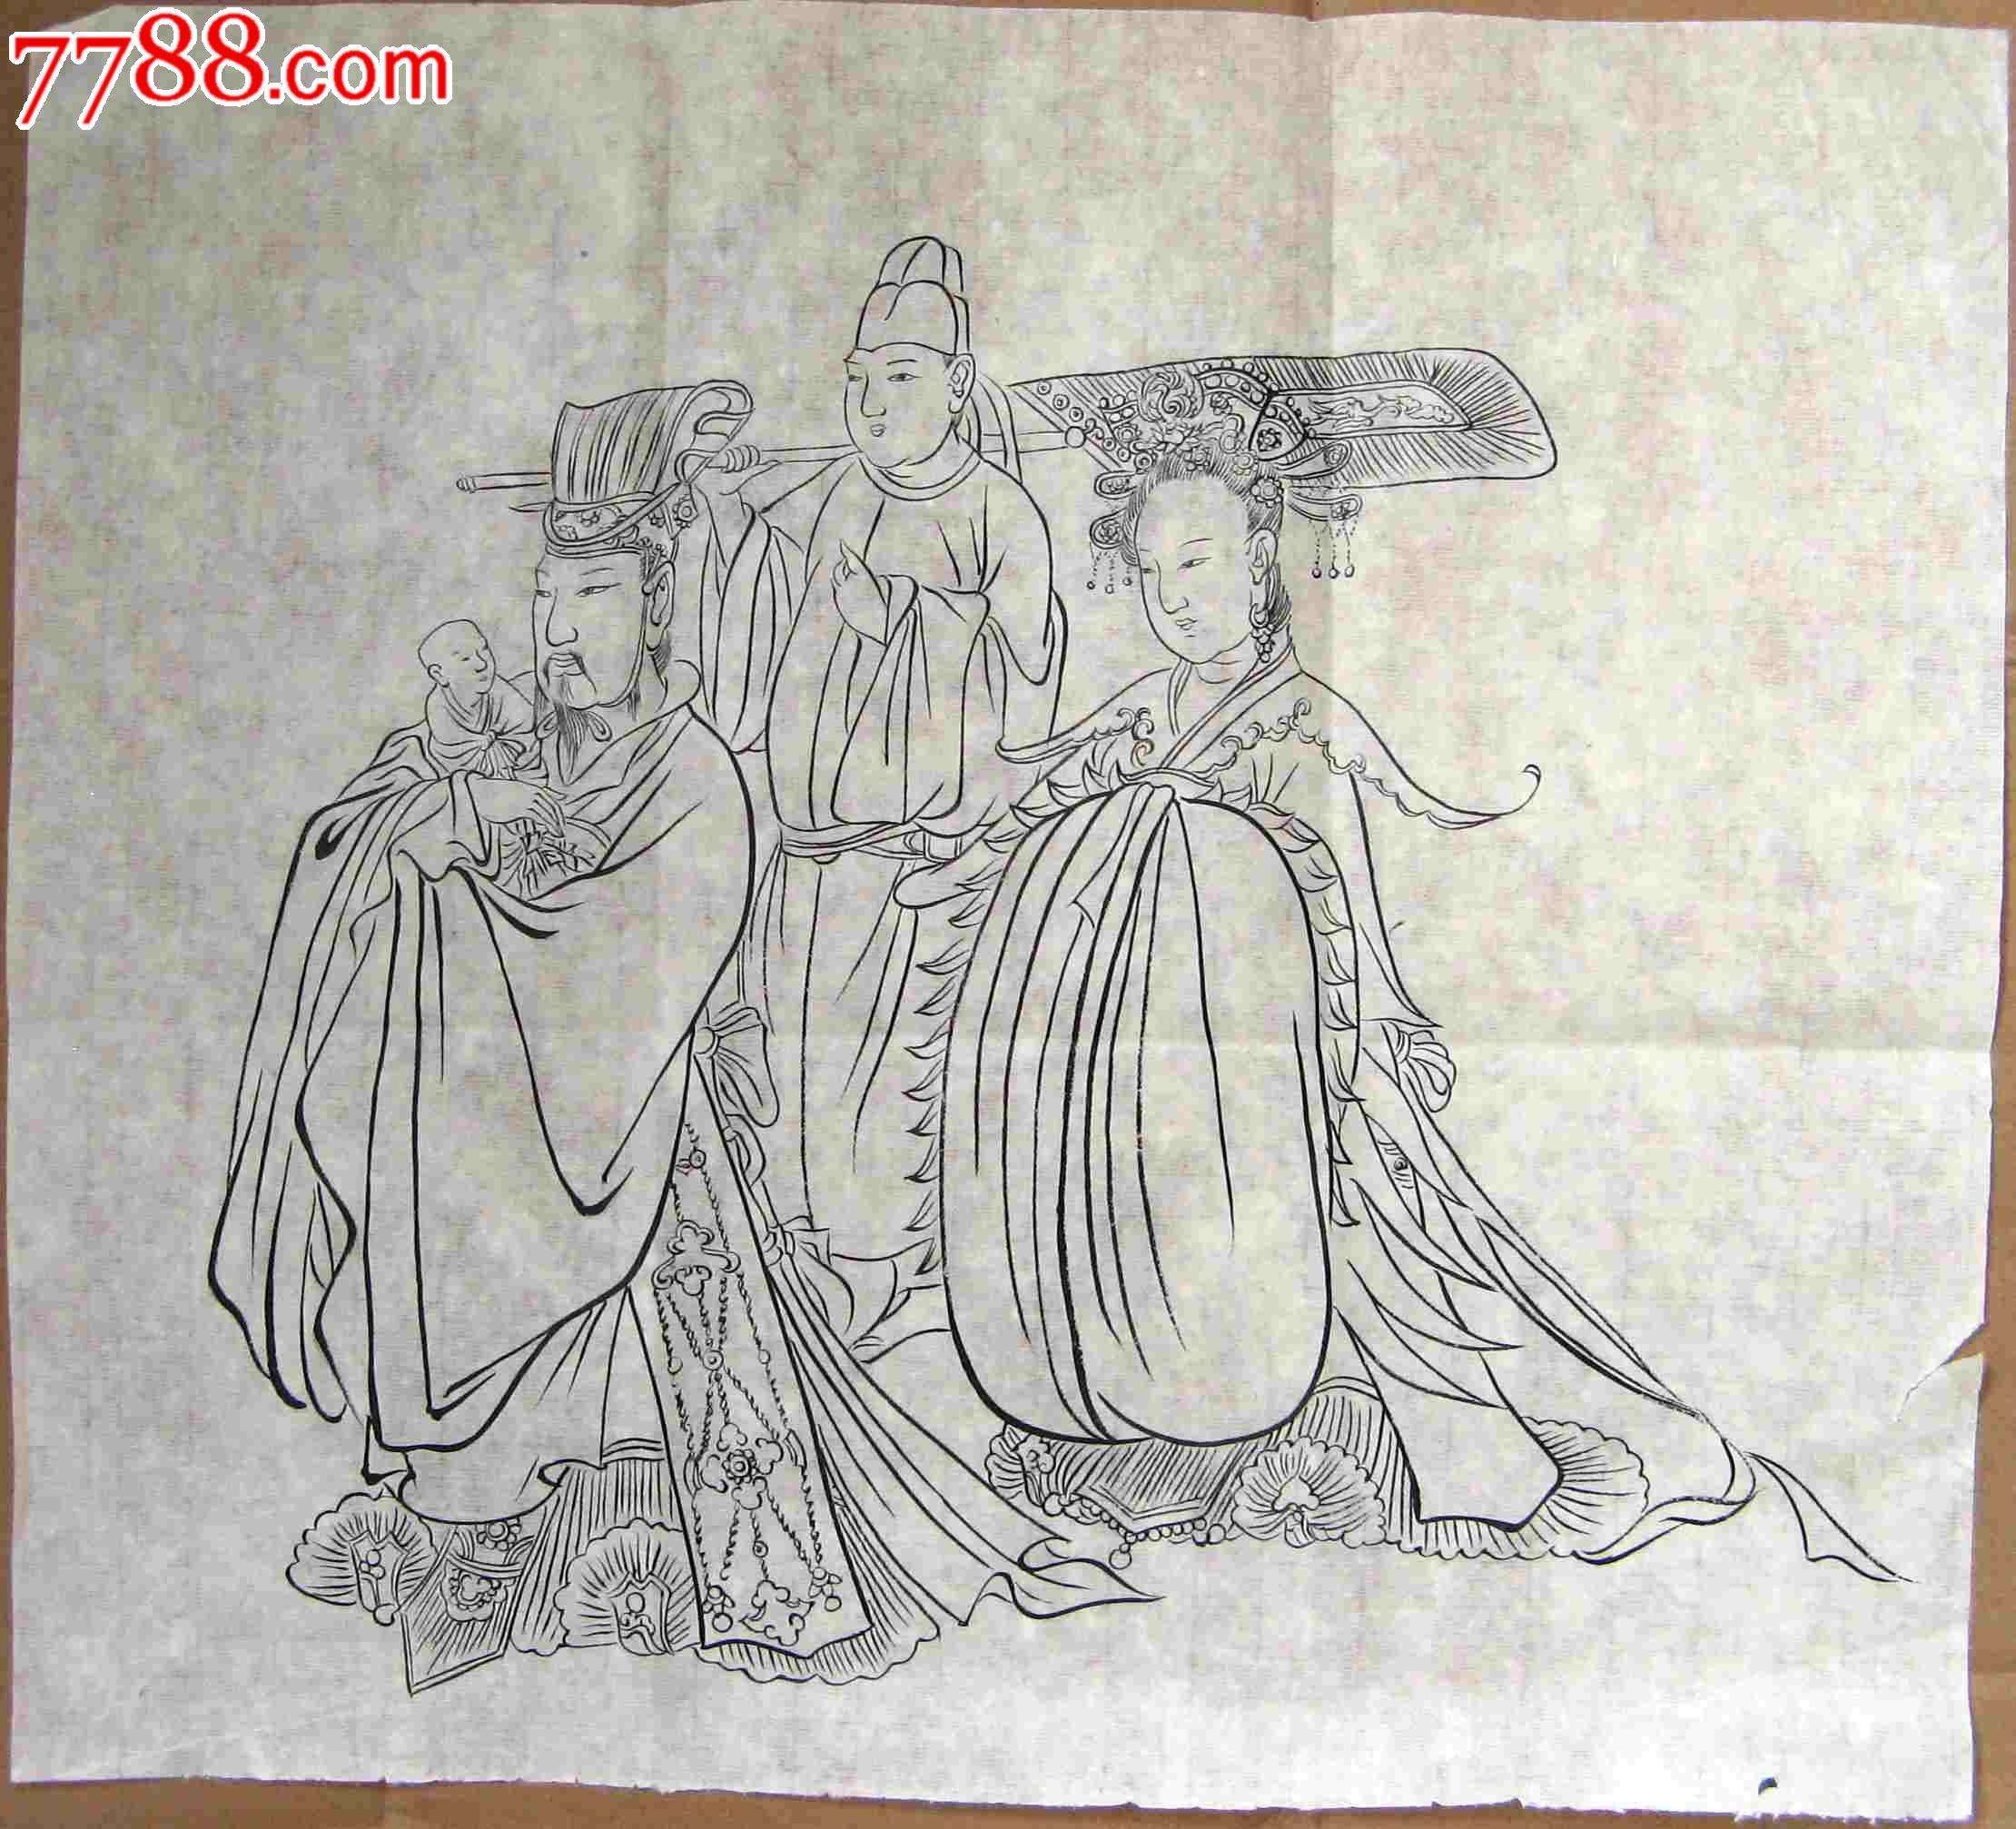 简练流畅的尺半横幅无款临摹古代人物画:吴道子送子天王图局部